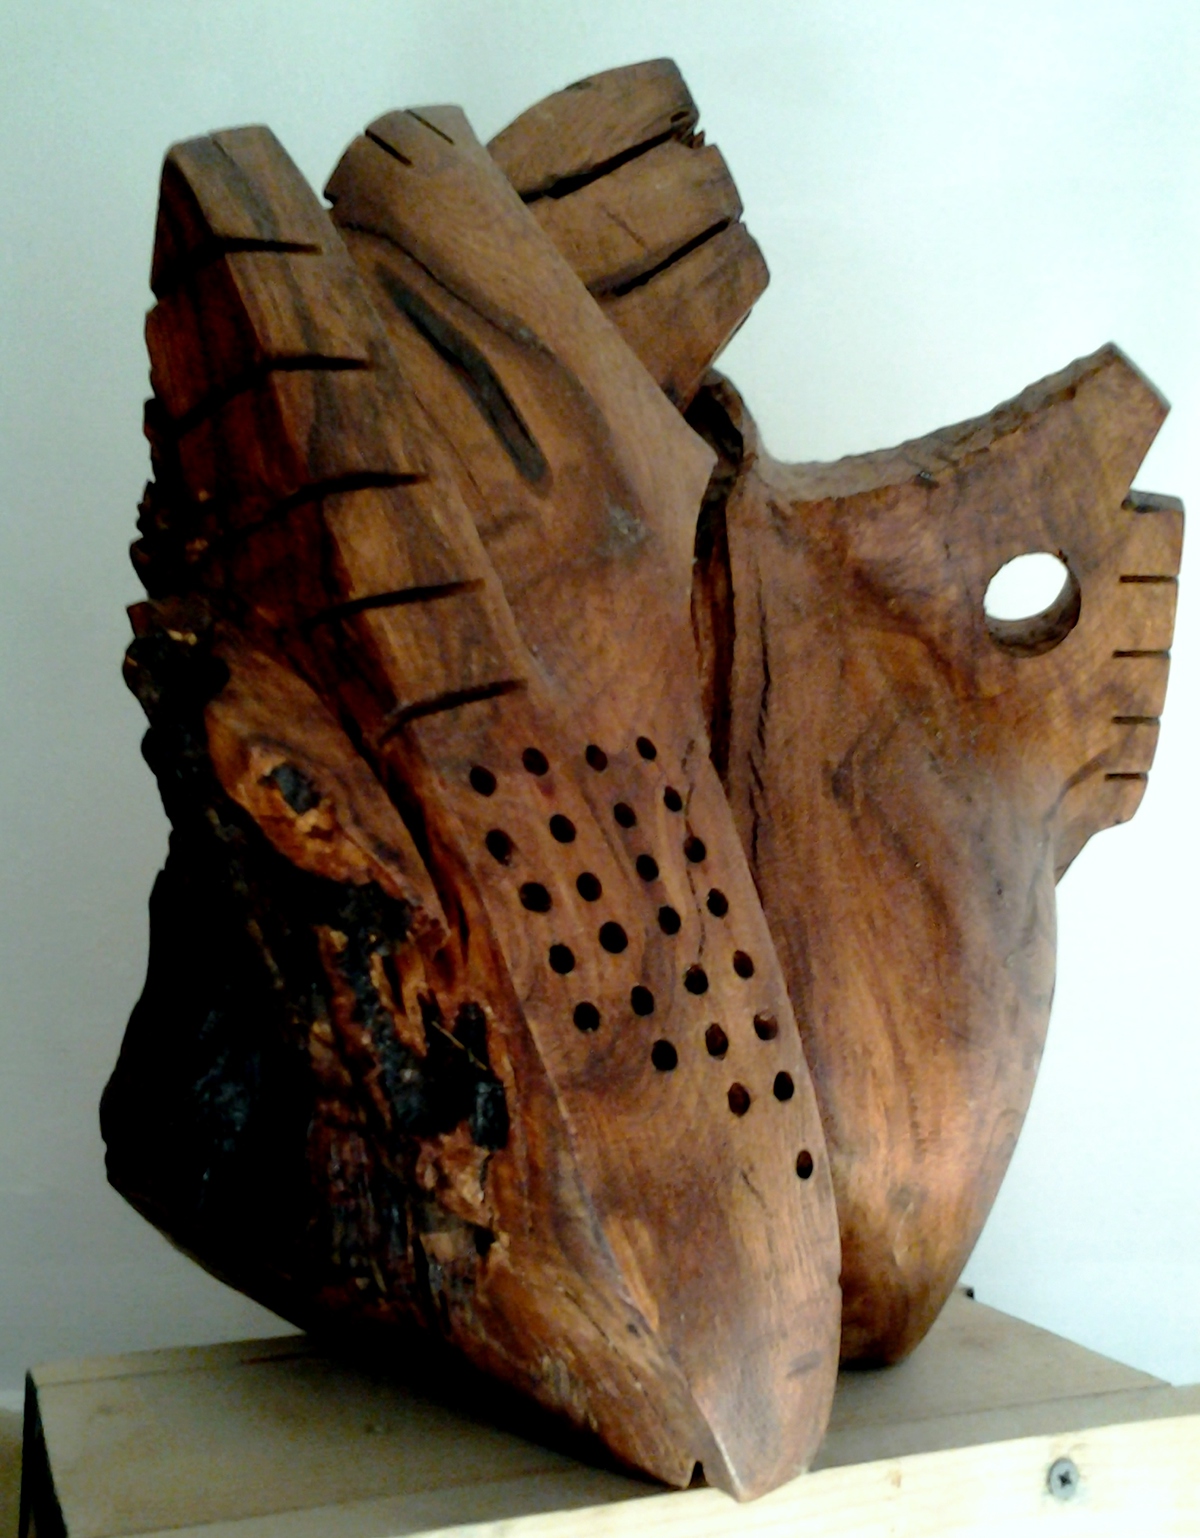 wood legno scultura marco schembri arte Ossa precolombinos